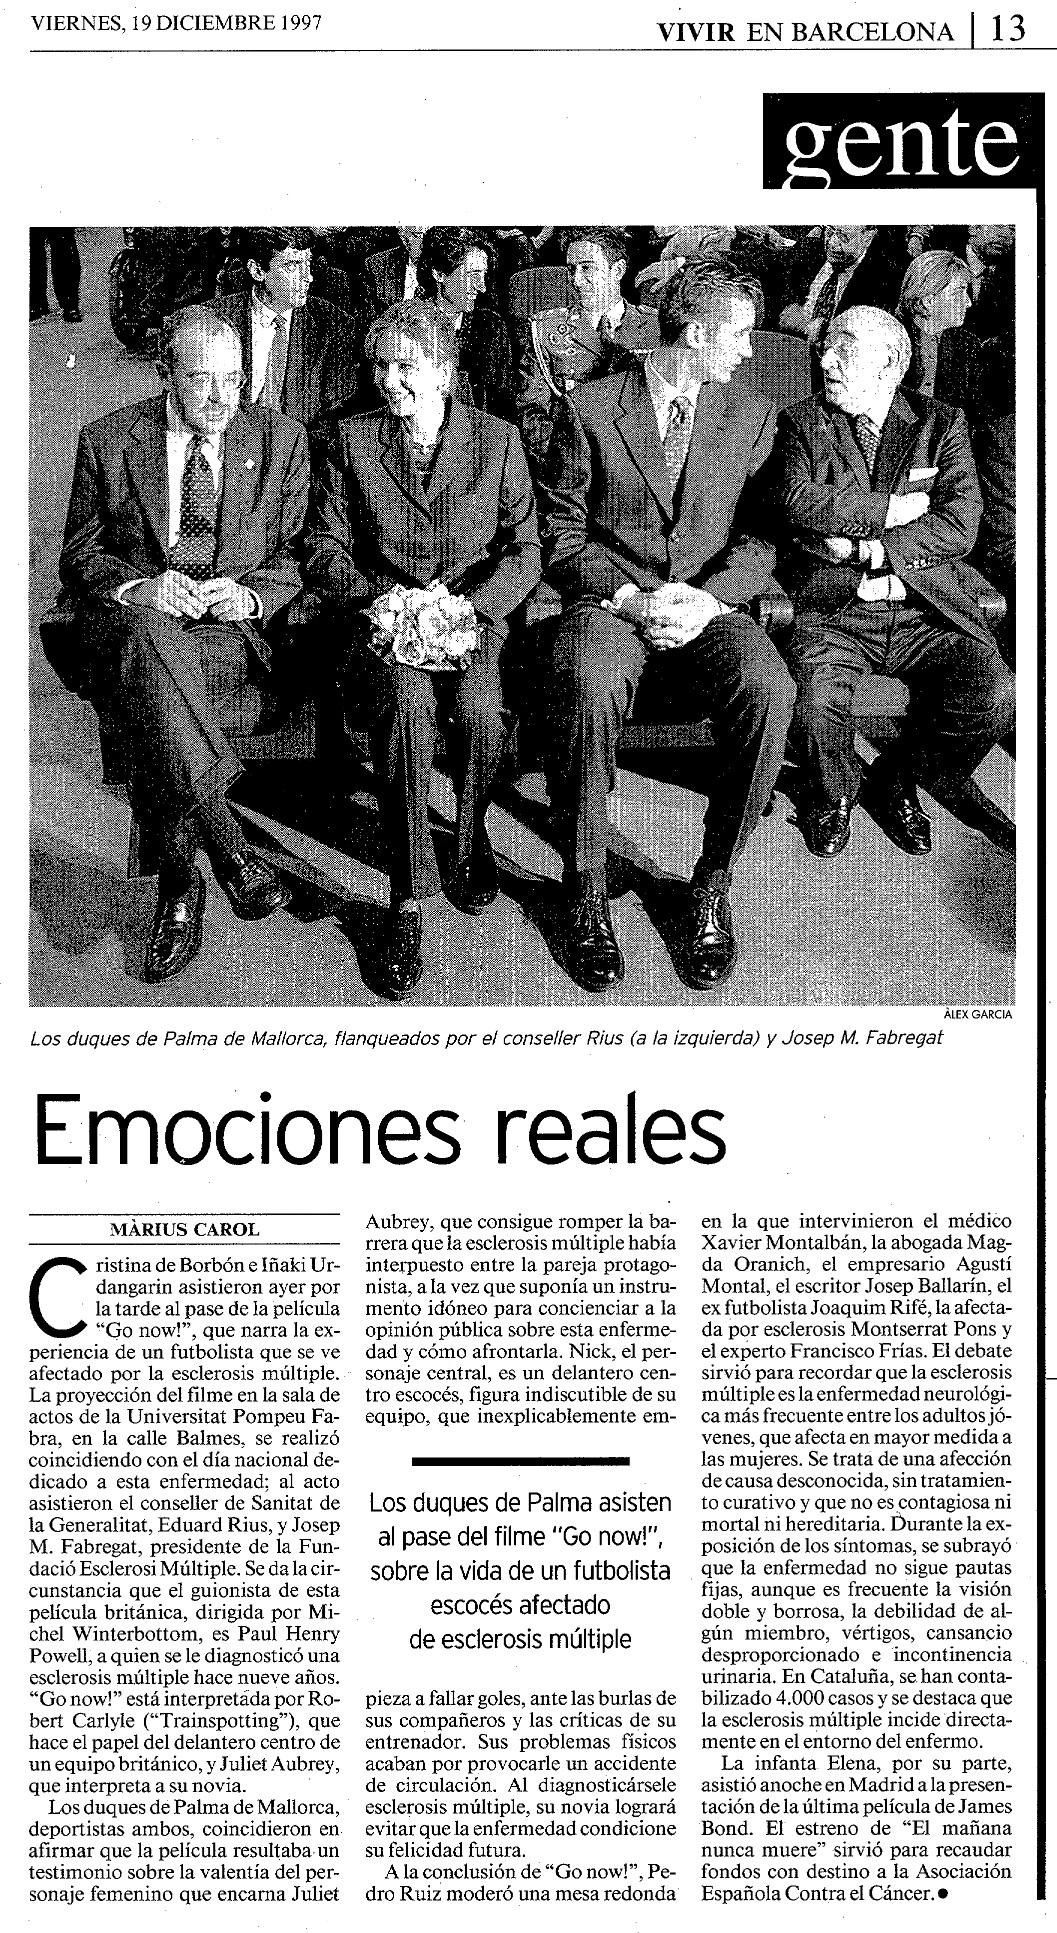 18 1997 12 19 La Vanguardia Barcelona 013 Presentacion Espana